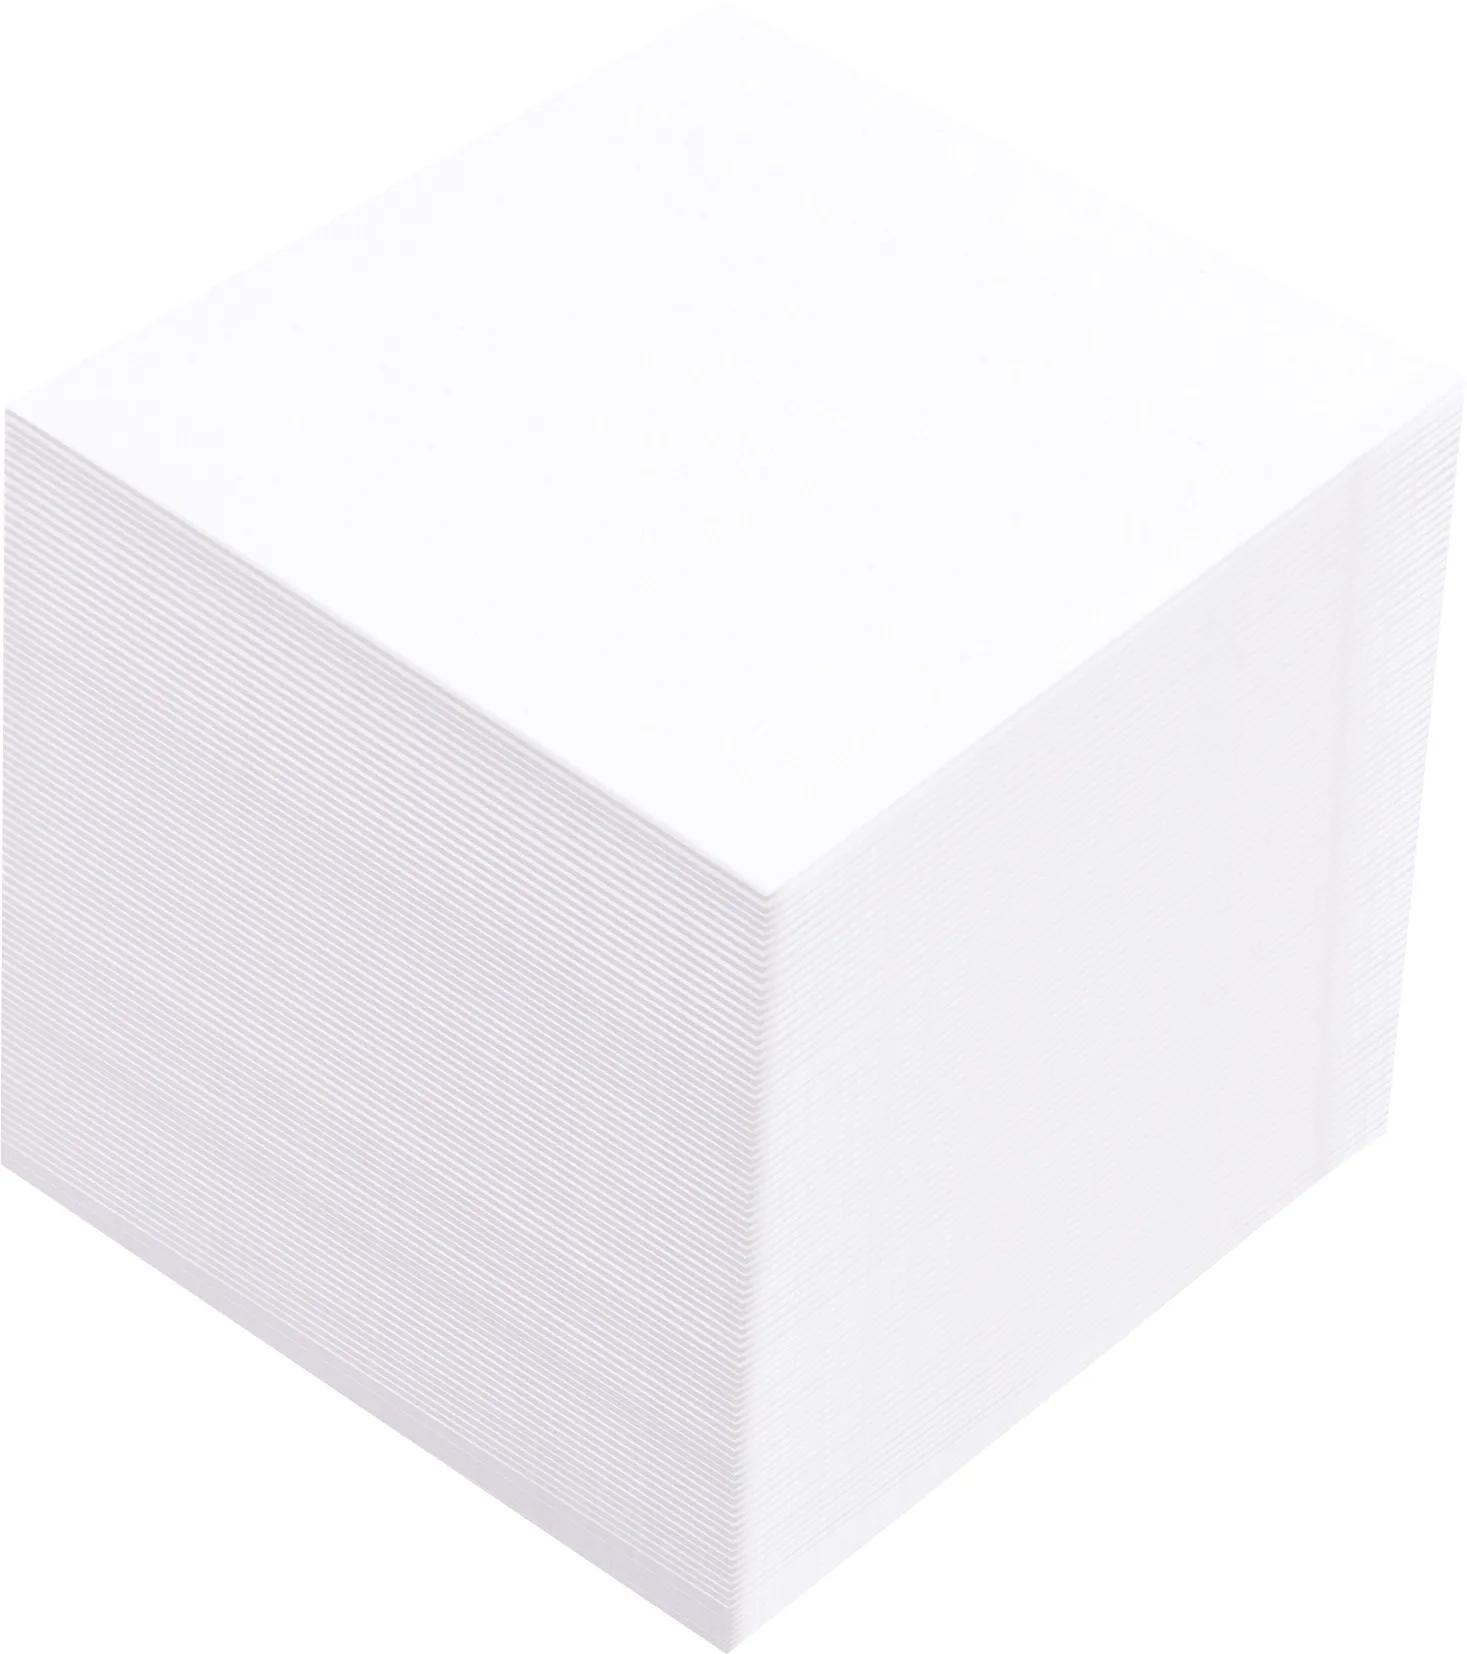 Souvenir® 3" x 3" x 3" Non-Adhesive Cube